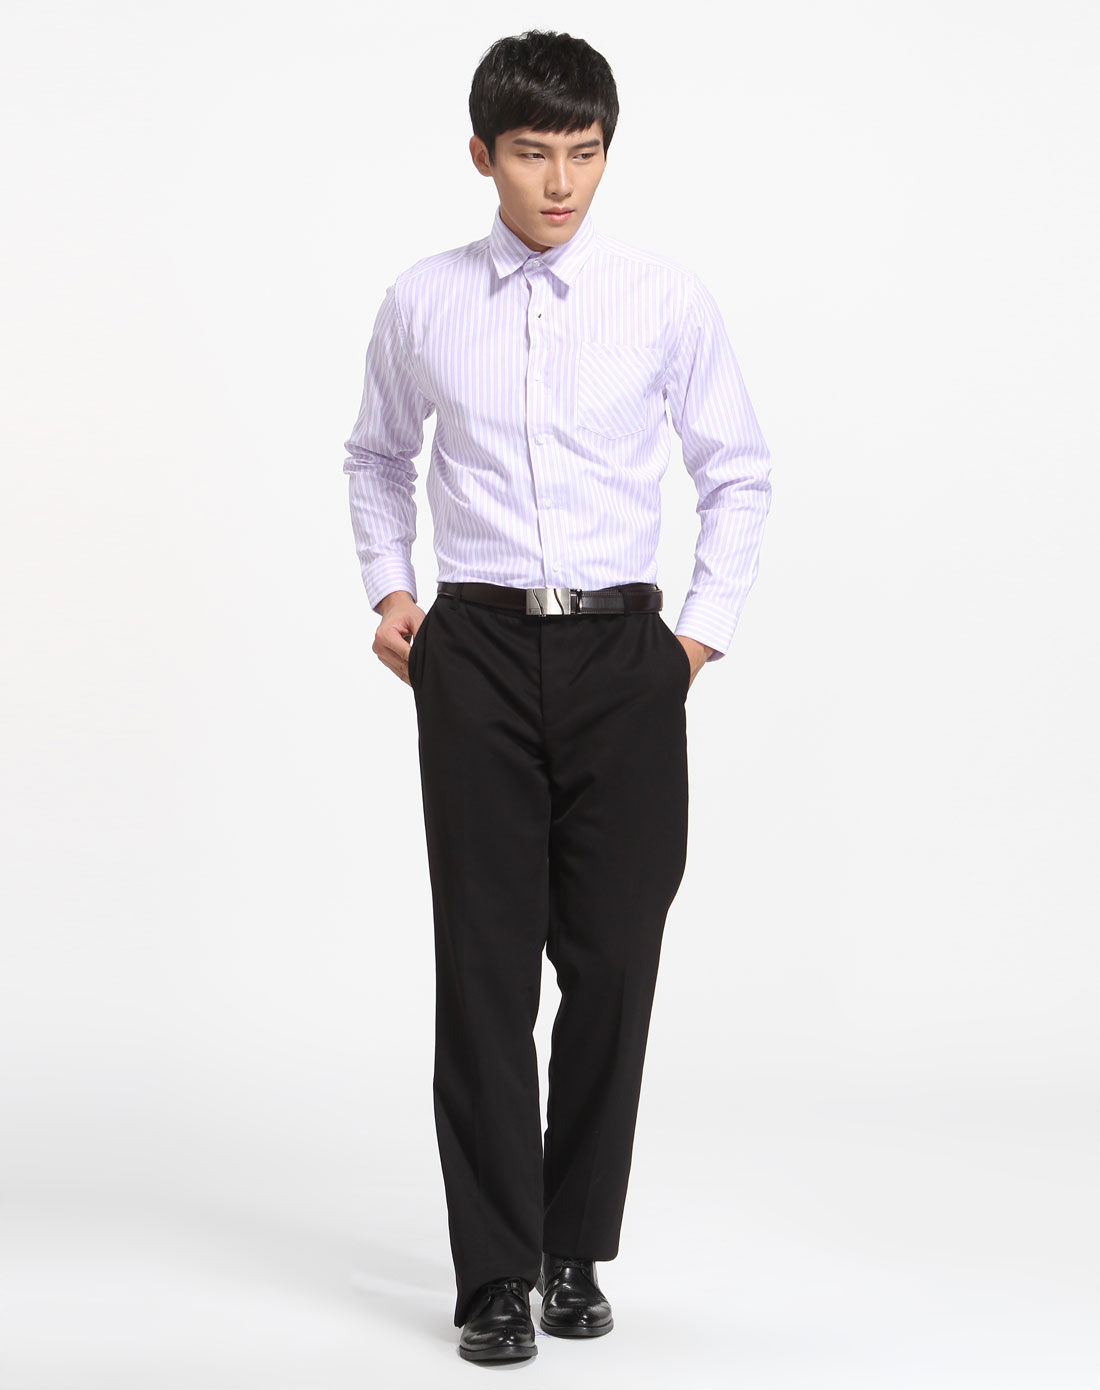 紫白色条纹长袖衬衫